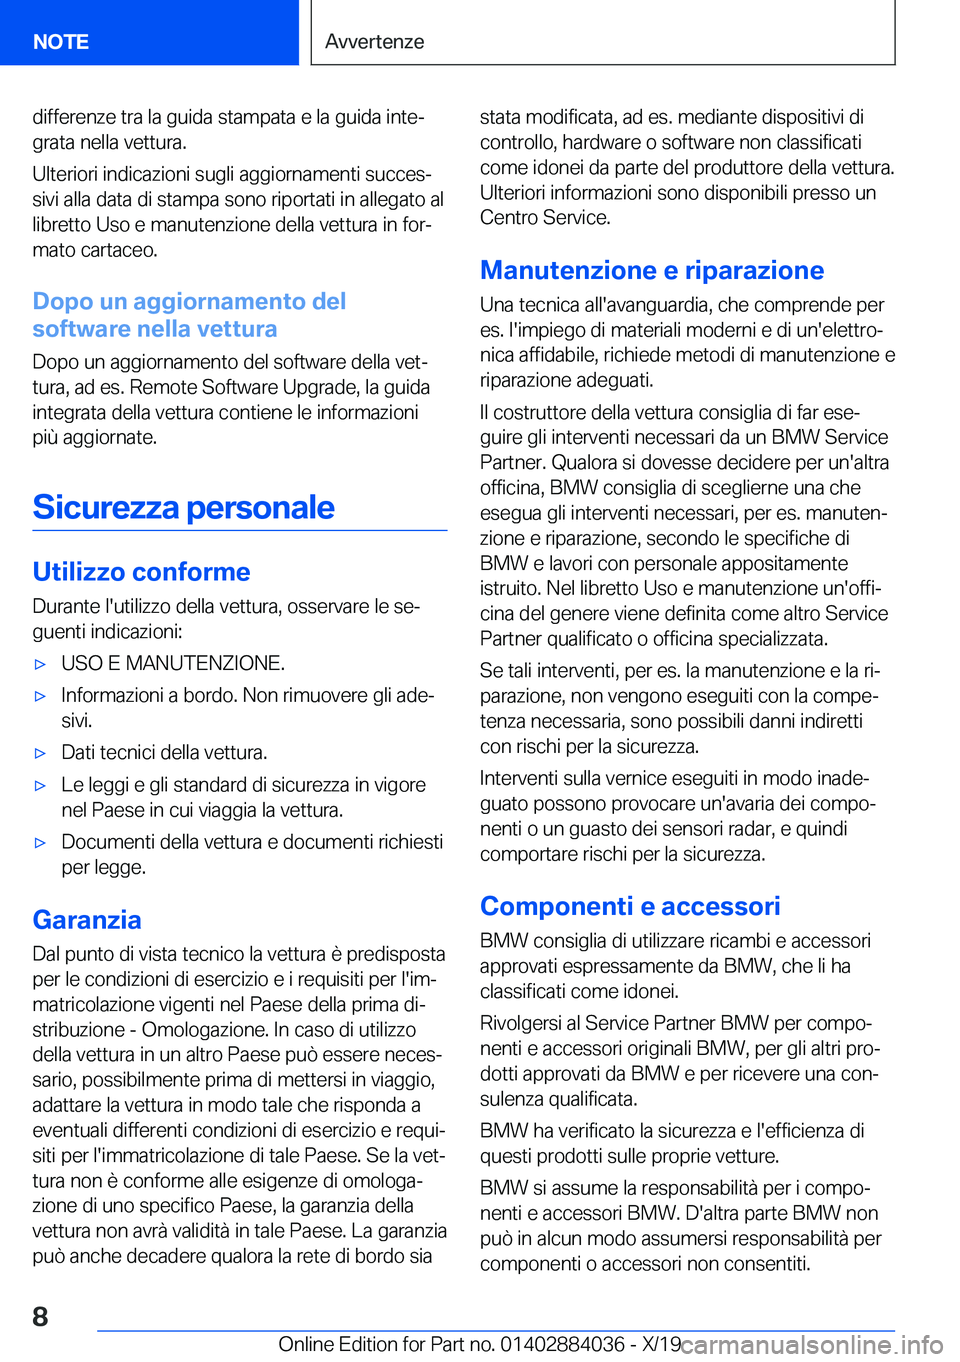 BMW 7 SERIES 2020  Libretti Di Uso E manutenzione (in Italian) �d�i�f�f�e�r�e�n�z�e��t�r�a��l�a��g�u�i�d�a��s�t�a�m�p�a�t�a��e��l�a��g�u�i�d�a��i�n�t�ej�g�r�a�t�a��n�e�l�l�a��v�e�t�t�u�r�a�.
�U�l�t�e�r�i�o�r�i��i�n�d�i�c�a�z�i�o�n�i��s�u�g�l�i��a�g�